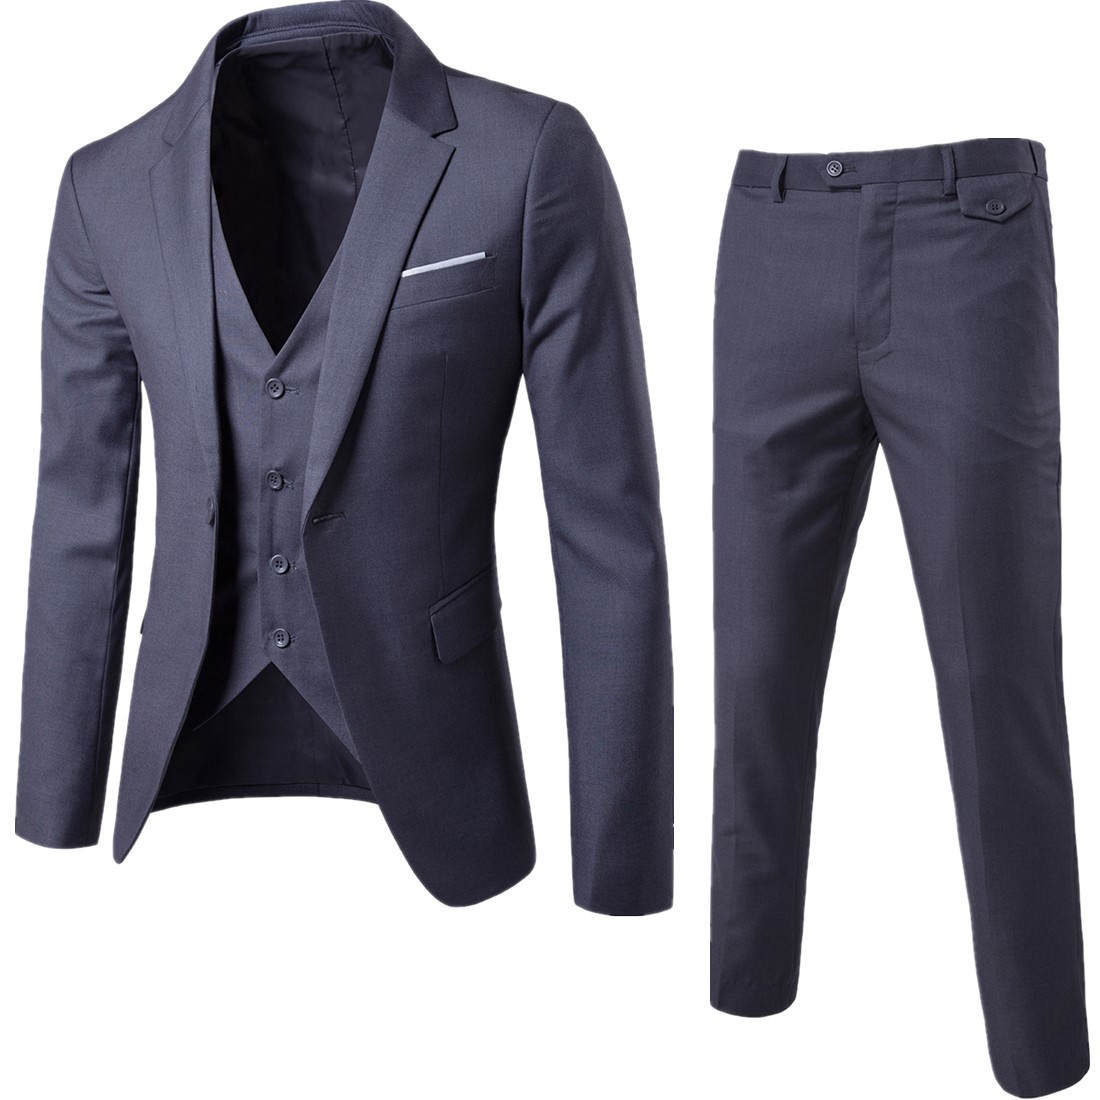 Spring 2020 new men's two piece suit Korean slim suit men's casual Plaid fashion suit